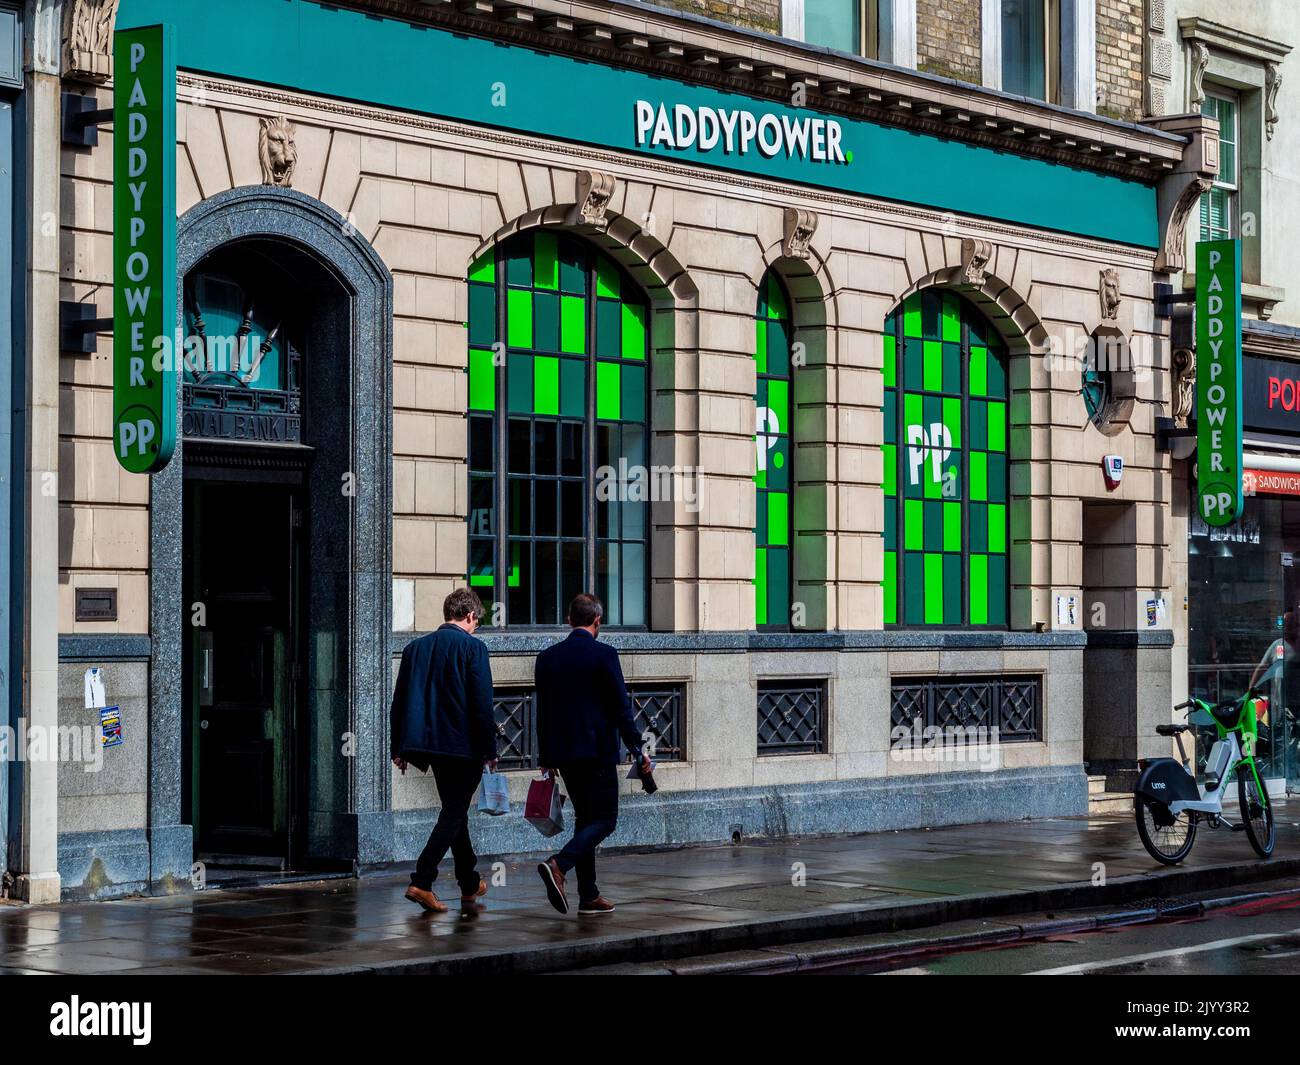 Paddy Power Bookies Shop en 286-288 Pentonville Rd, Kings Cross London. Paddy Power es una casa de apuestas irlandesa fundada en 1988. Foto de stock